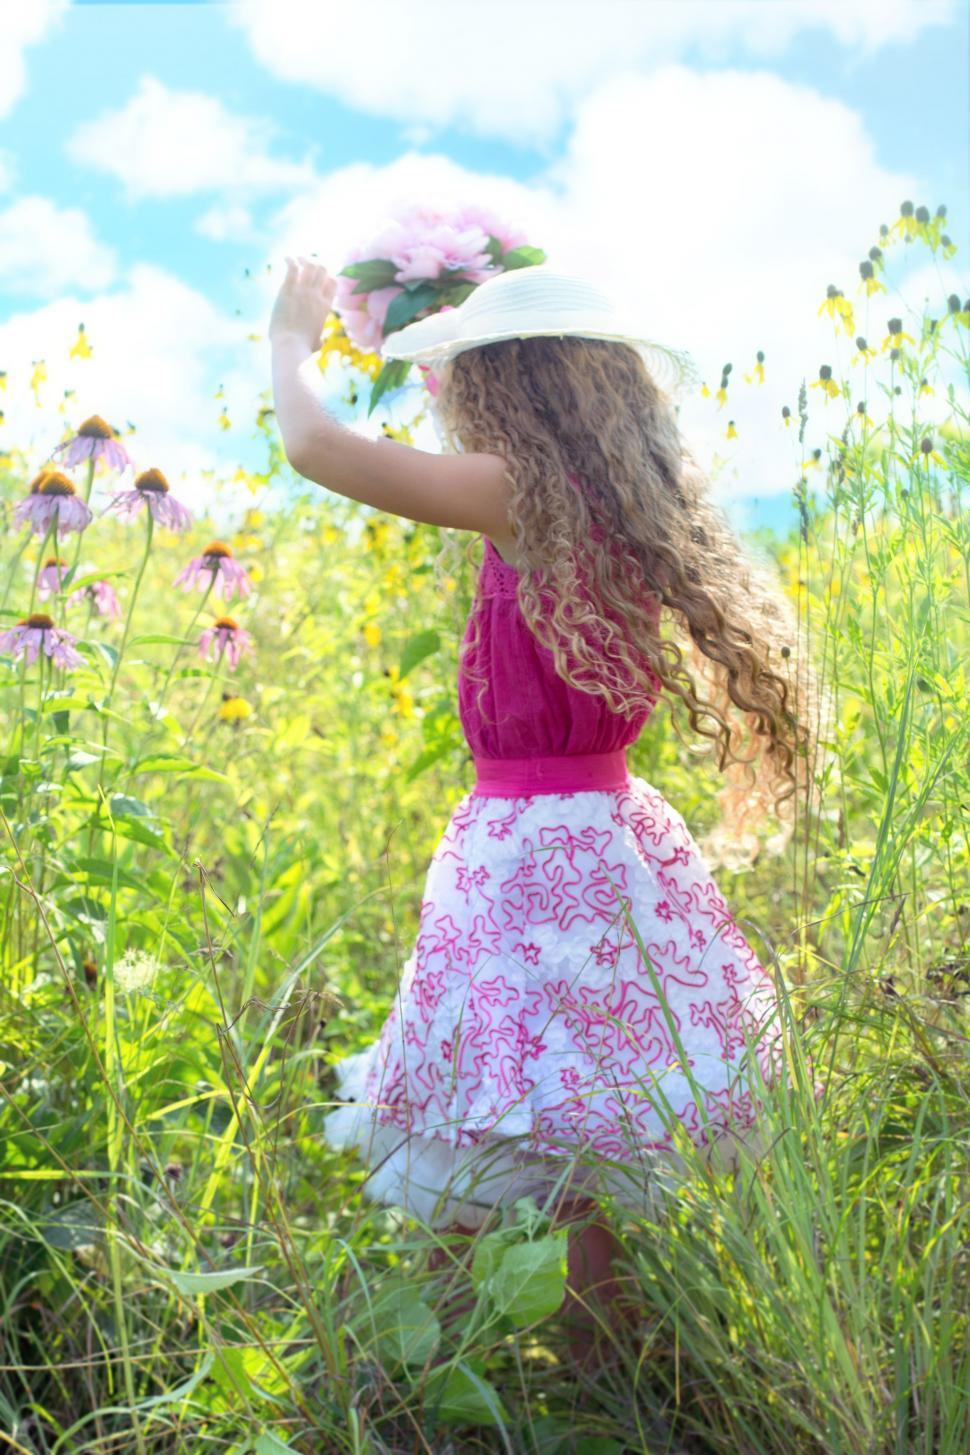 Free Image of Little Girl in hat in flower field 